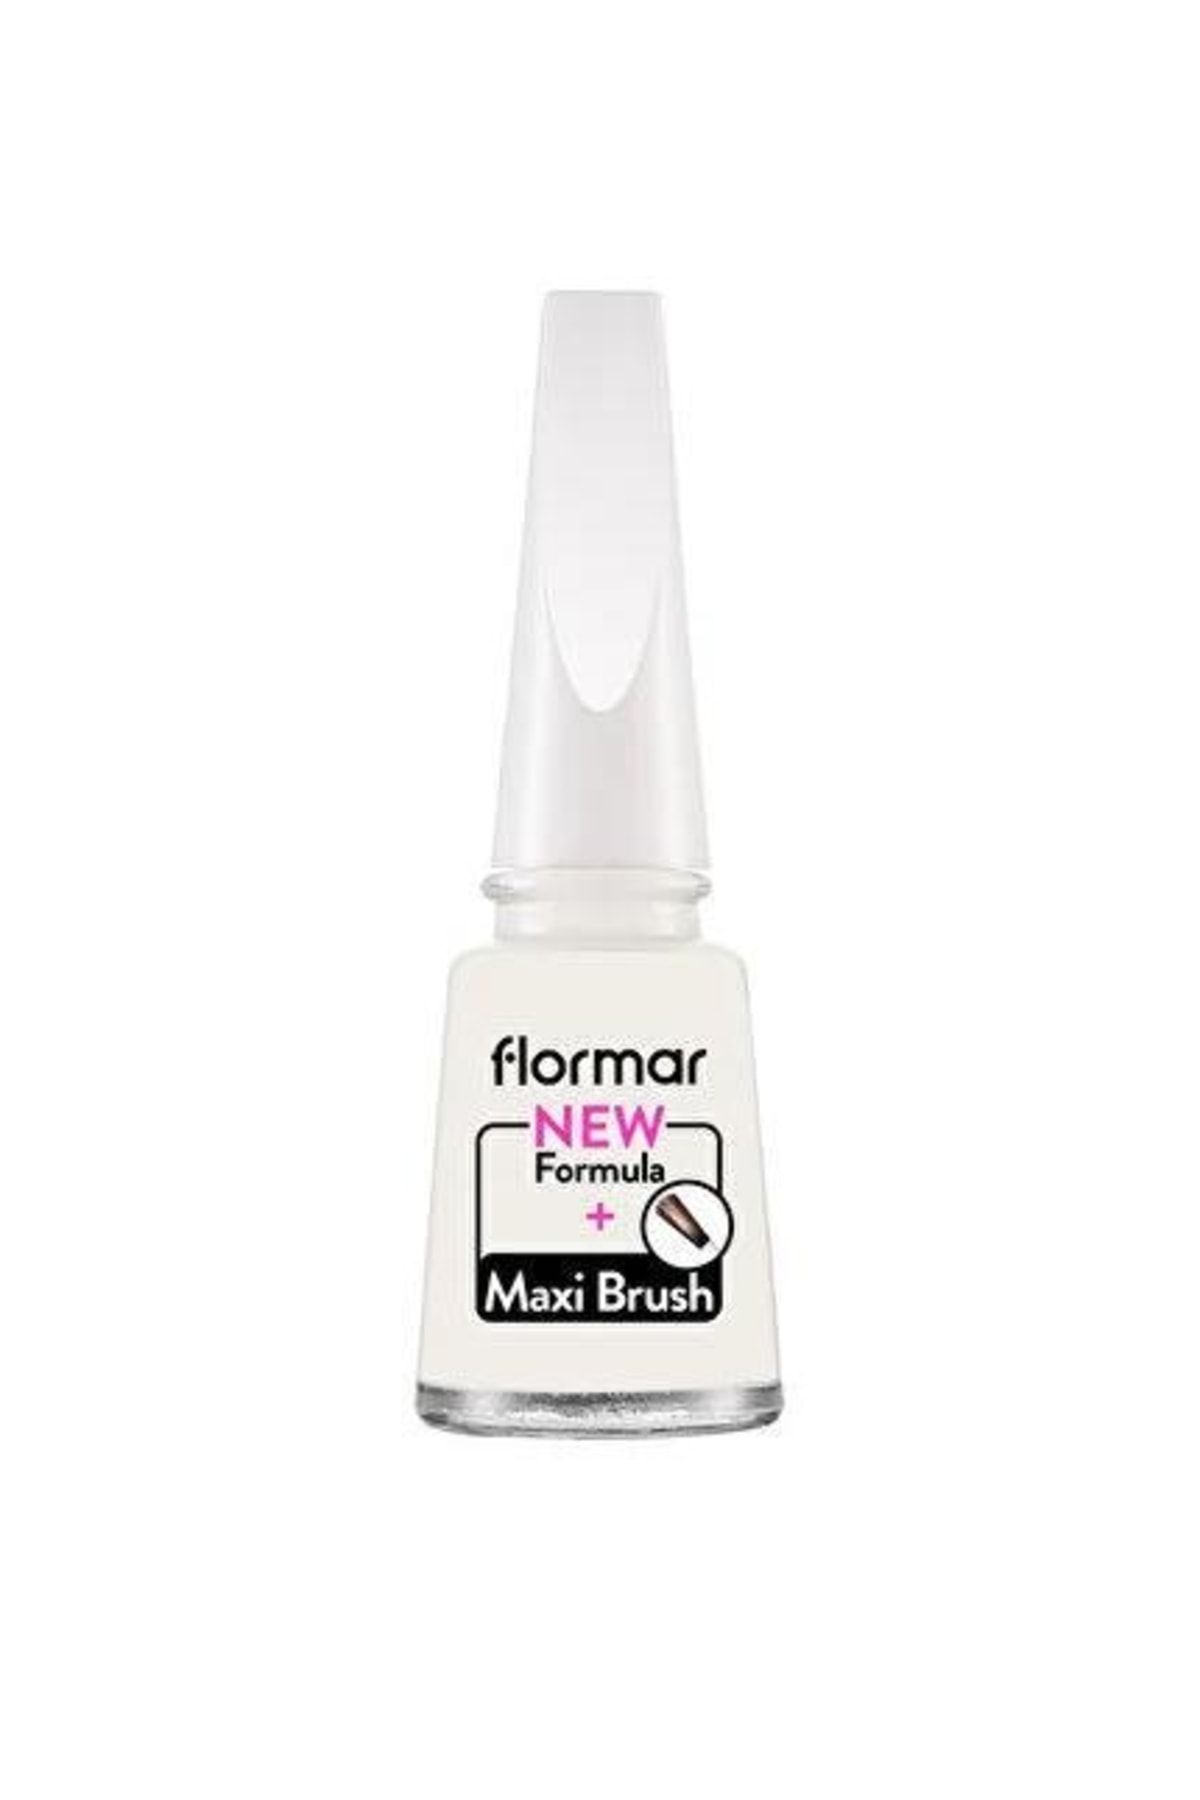 Flormar Sedefli Parlak Oje (Beyaz) - Nail Enamel - 319 White Dance - 8682536035880